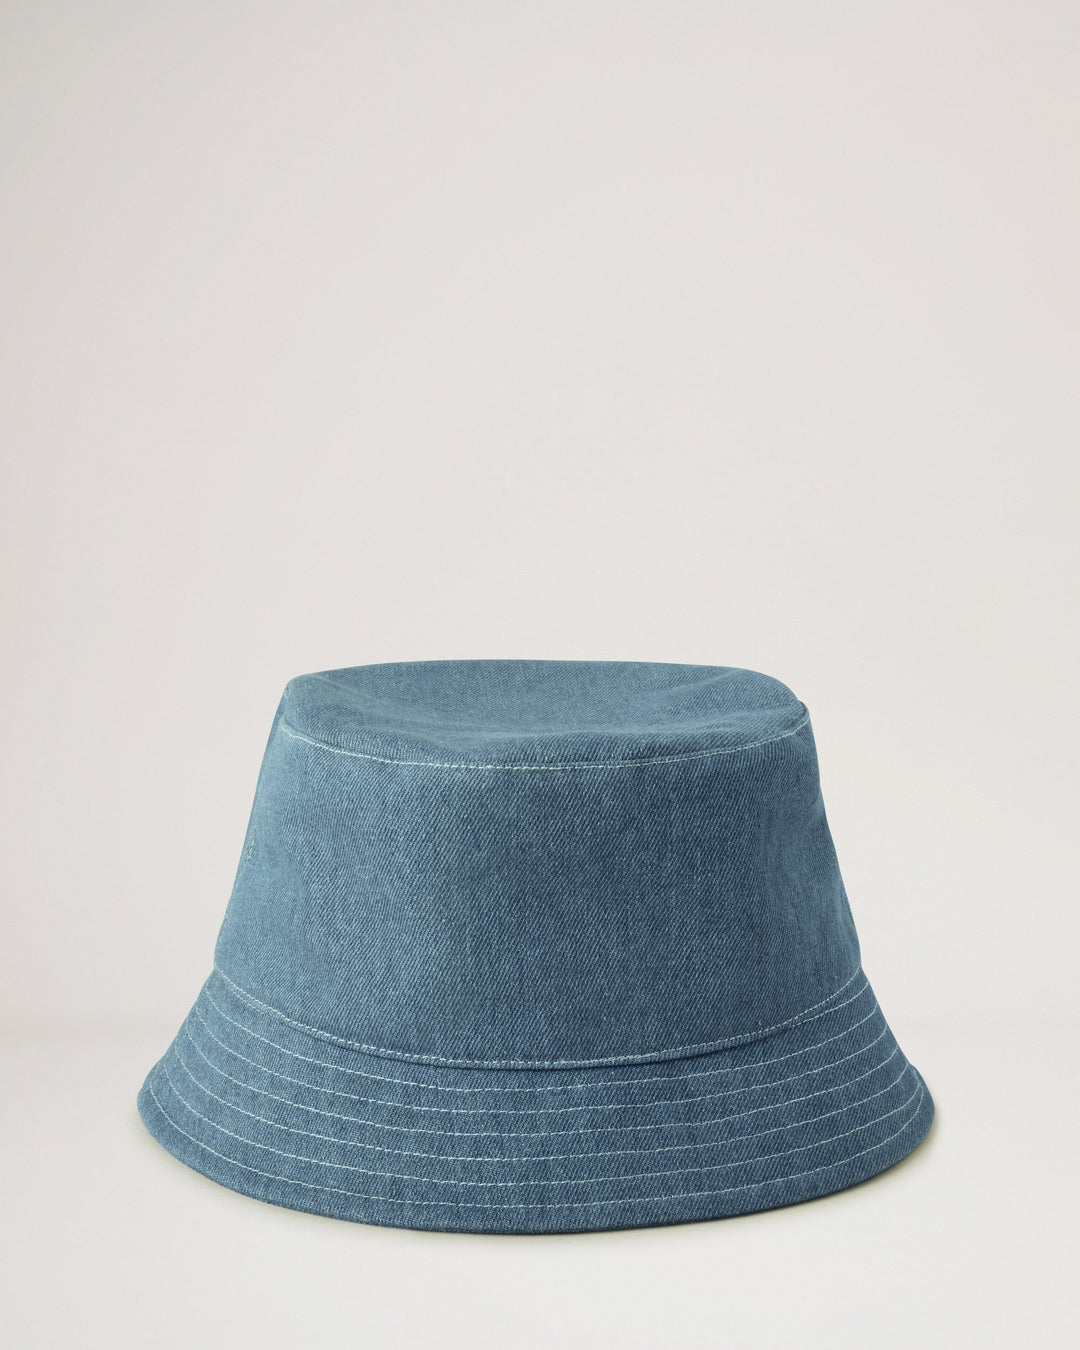 Denim Bucket Hat Denim Blue Cotton